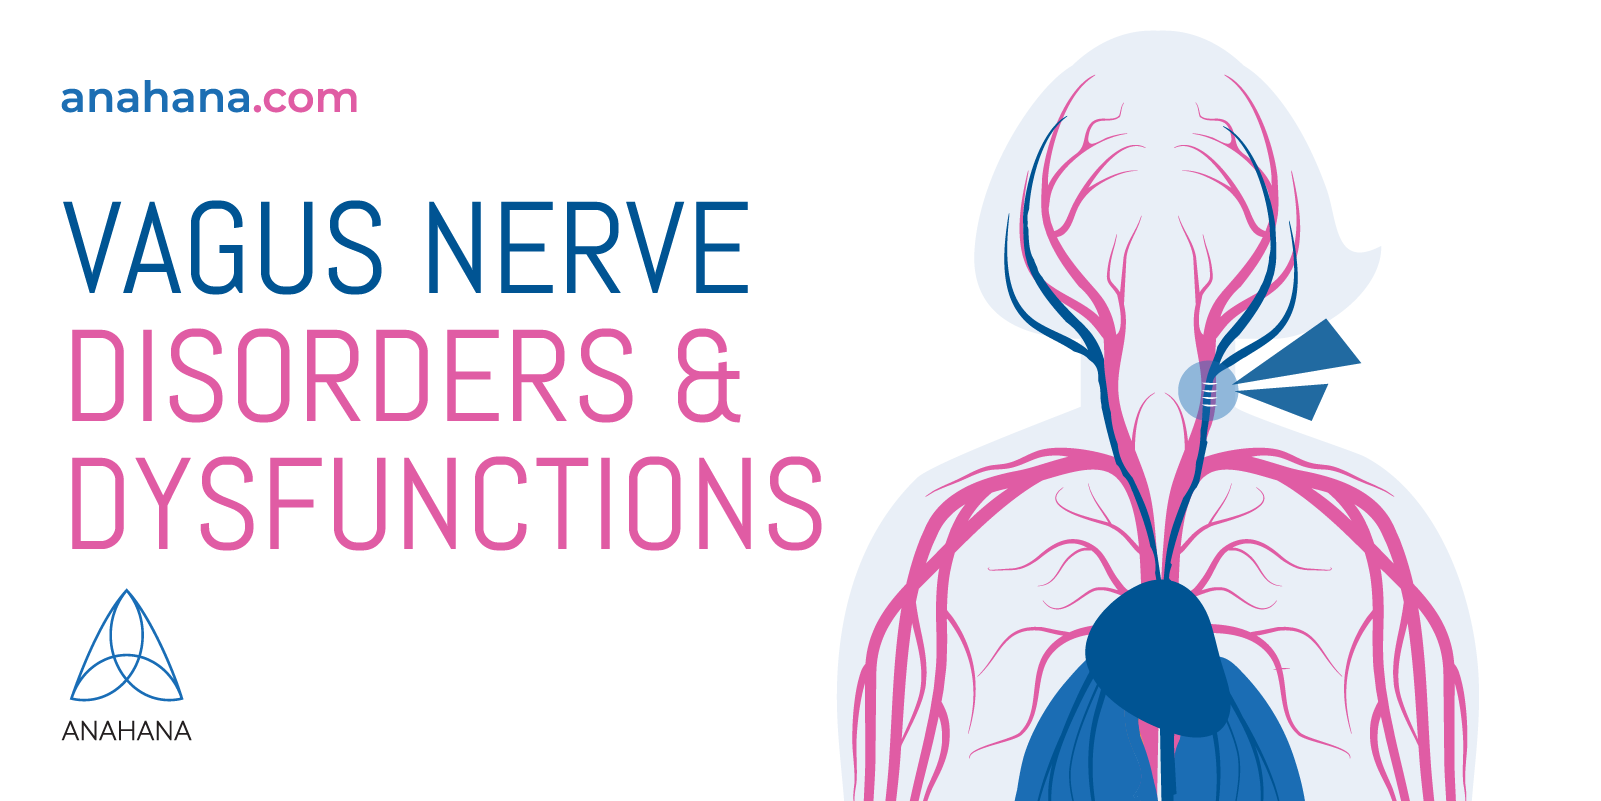 verschillende disfuncties en aandoeningen van de nervus vagus